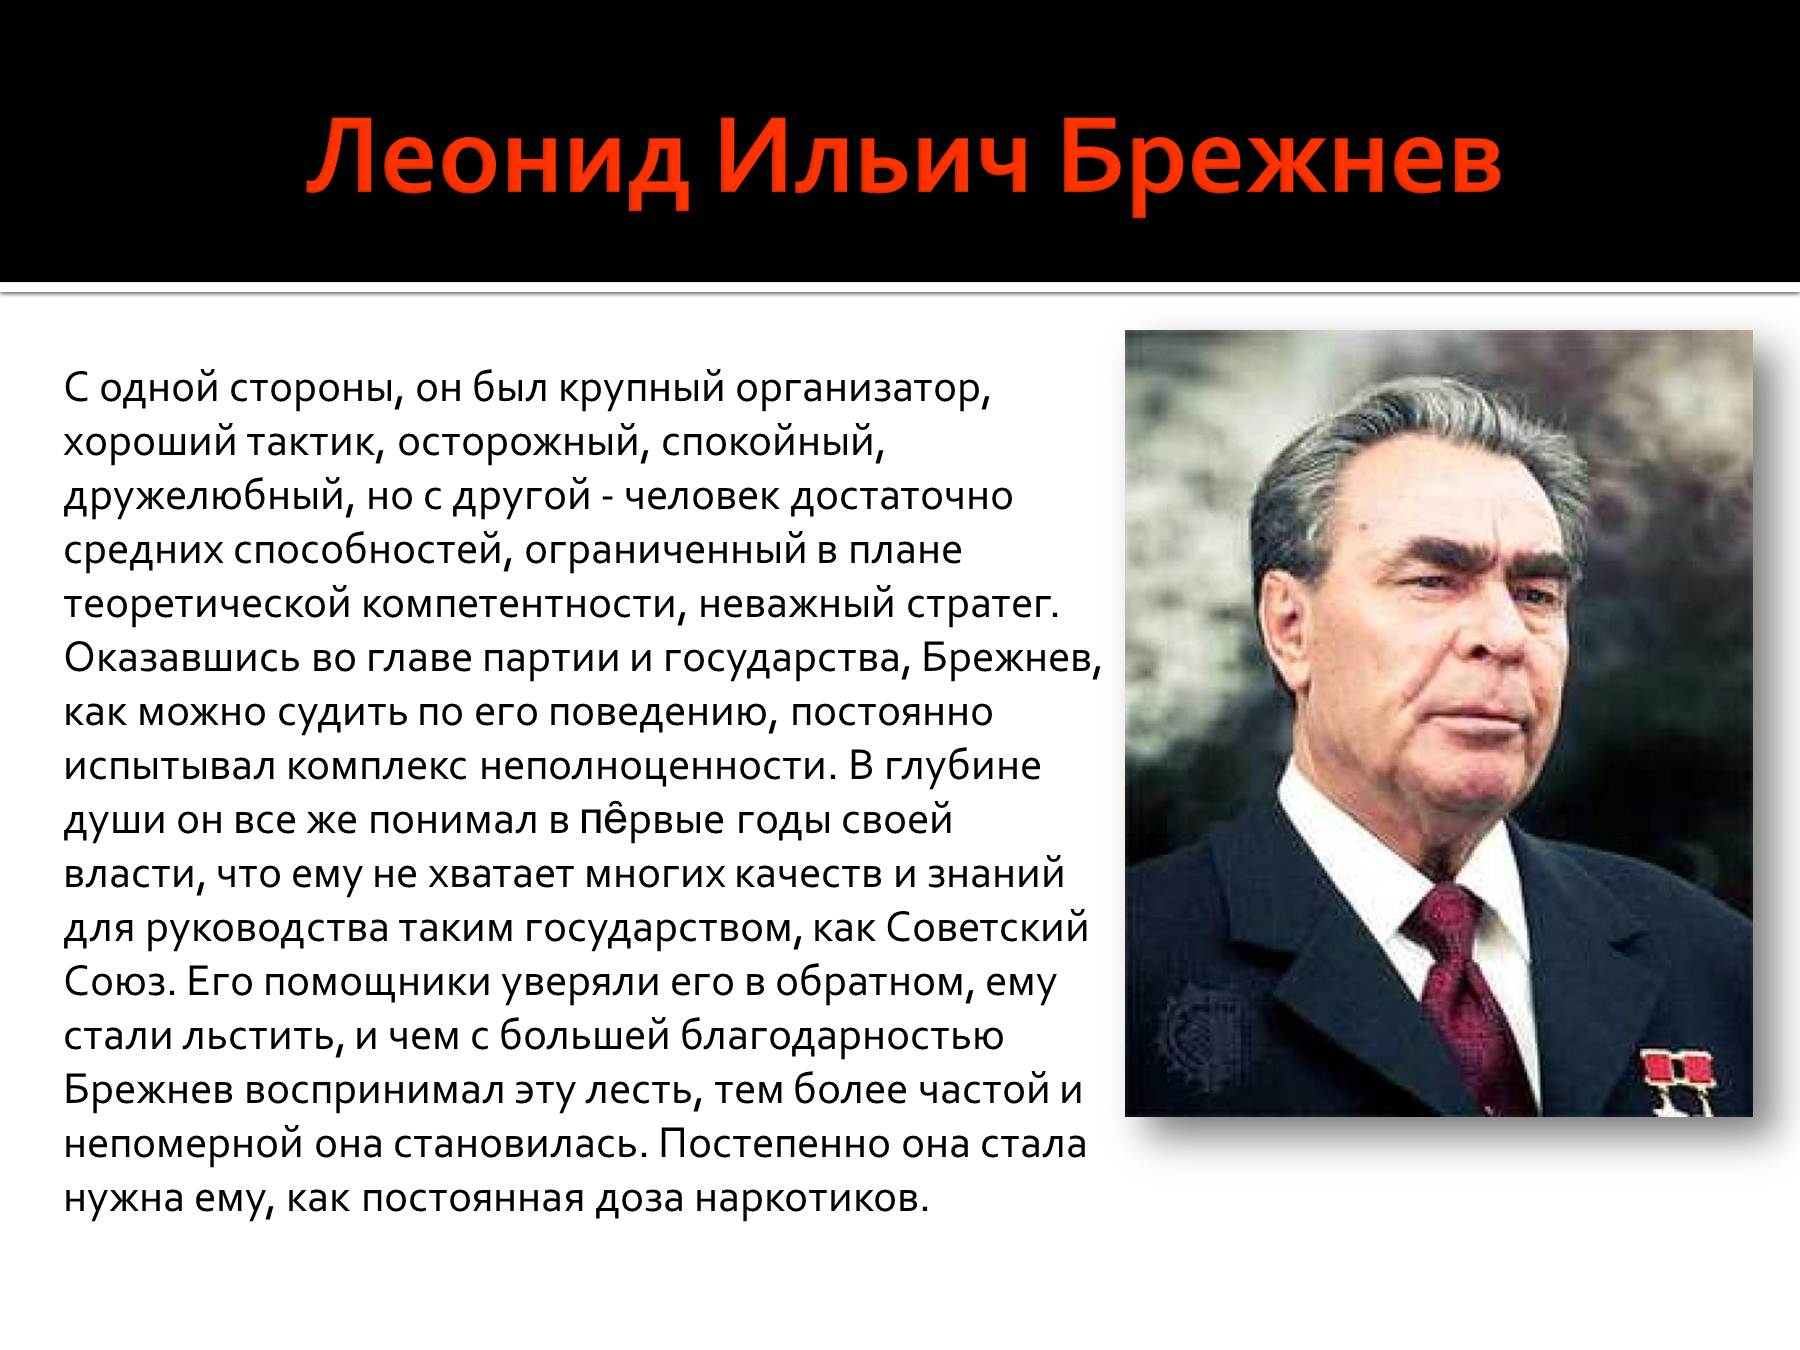 В каком году брежнев стал. Политический портрет л и Брежнева кратко. Брежнев исторический портрет эпоха застоя.